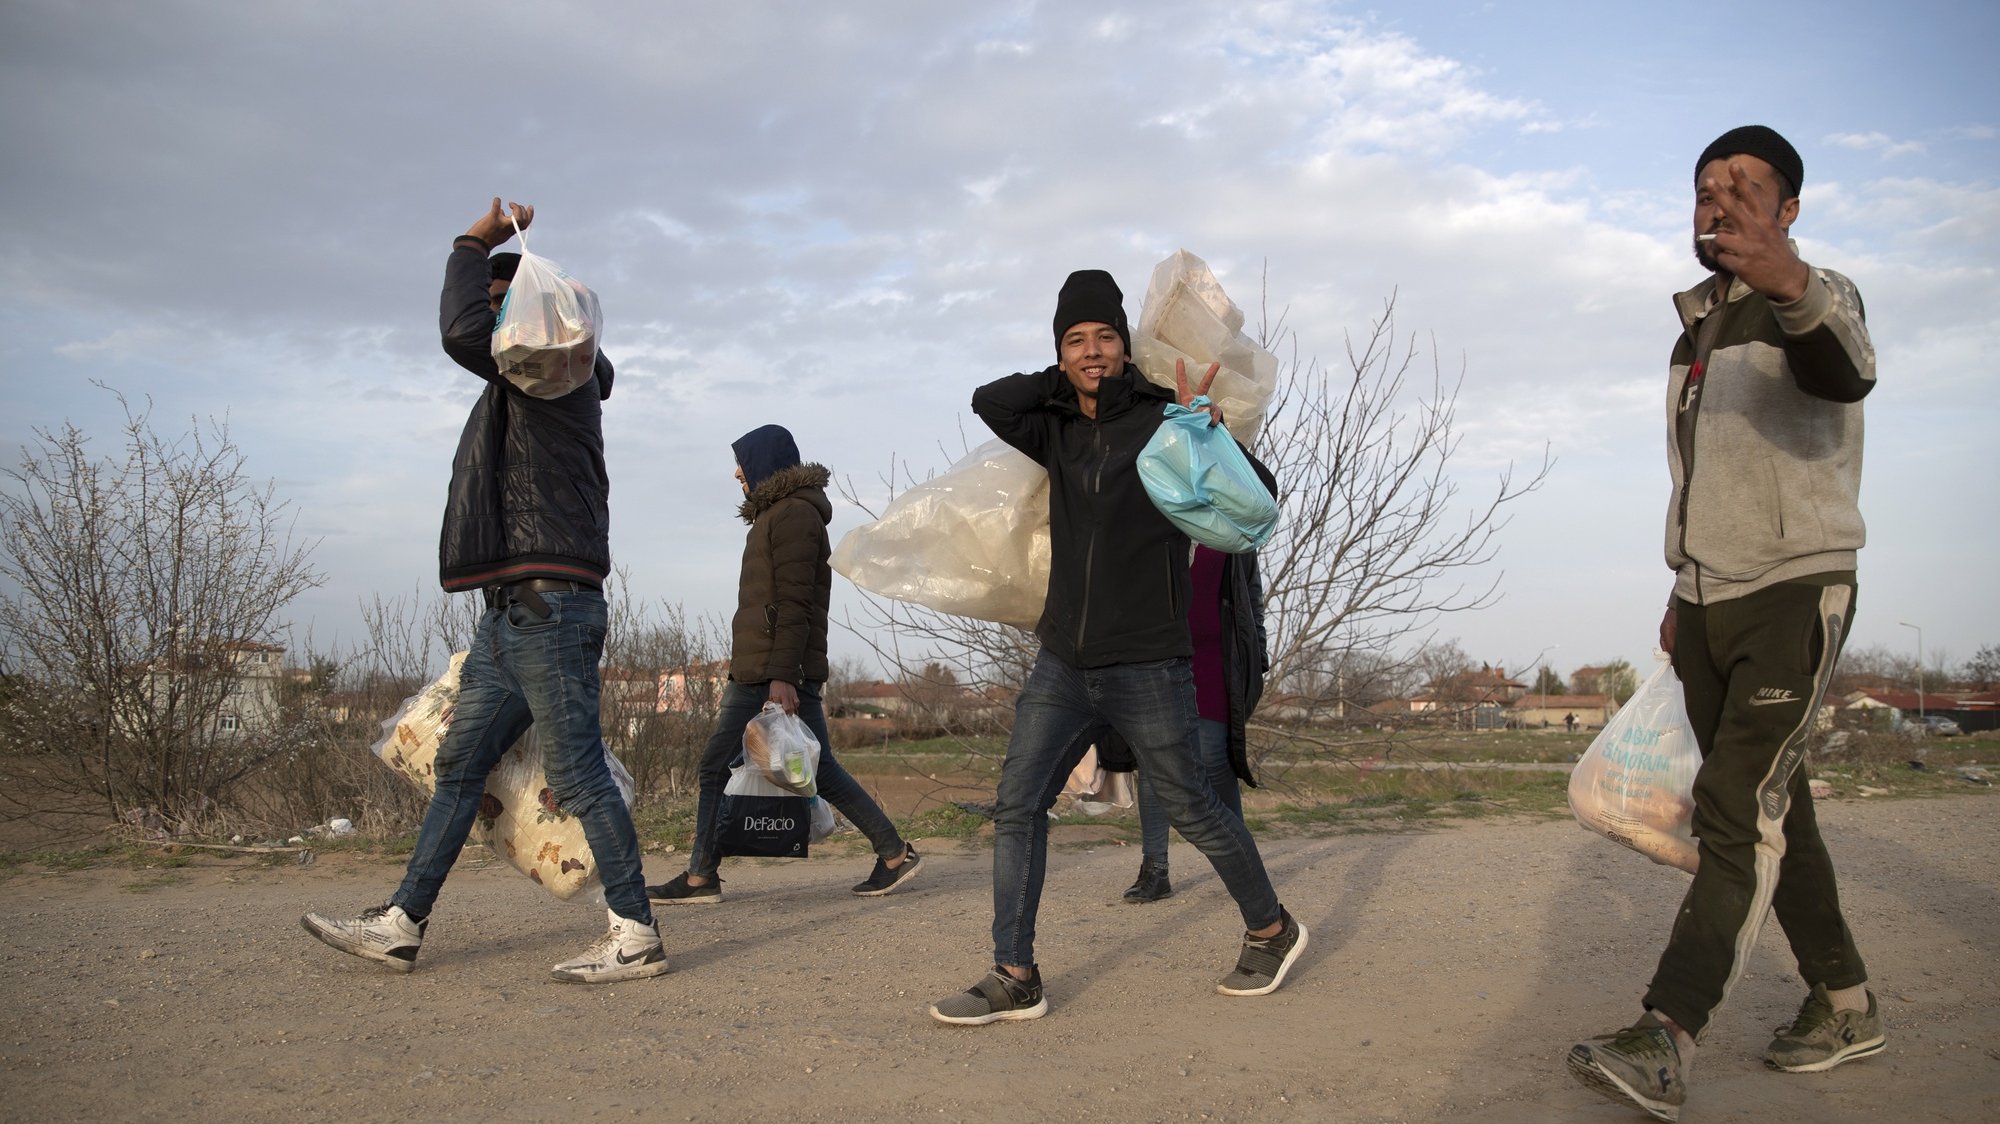 Refugiados e migrantes perto da fronteira grega, Turquia.